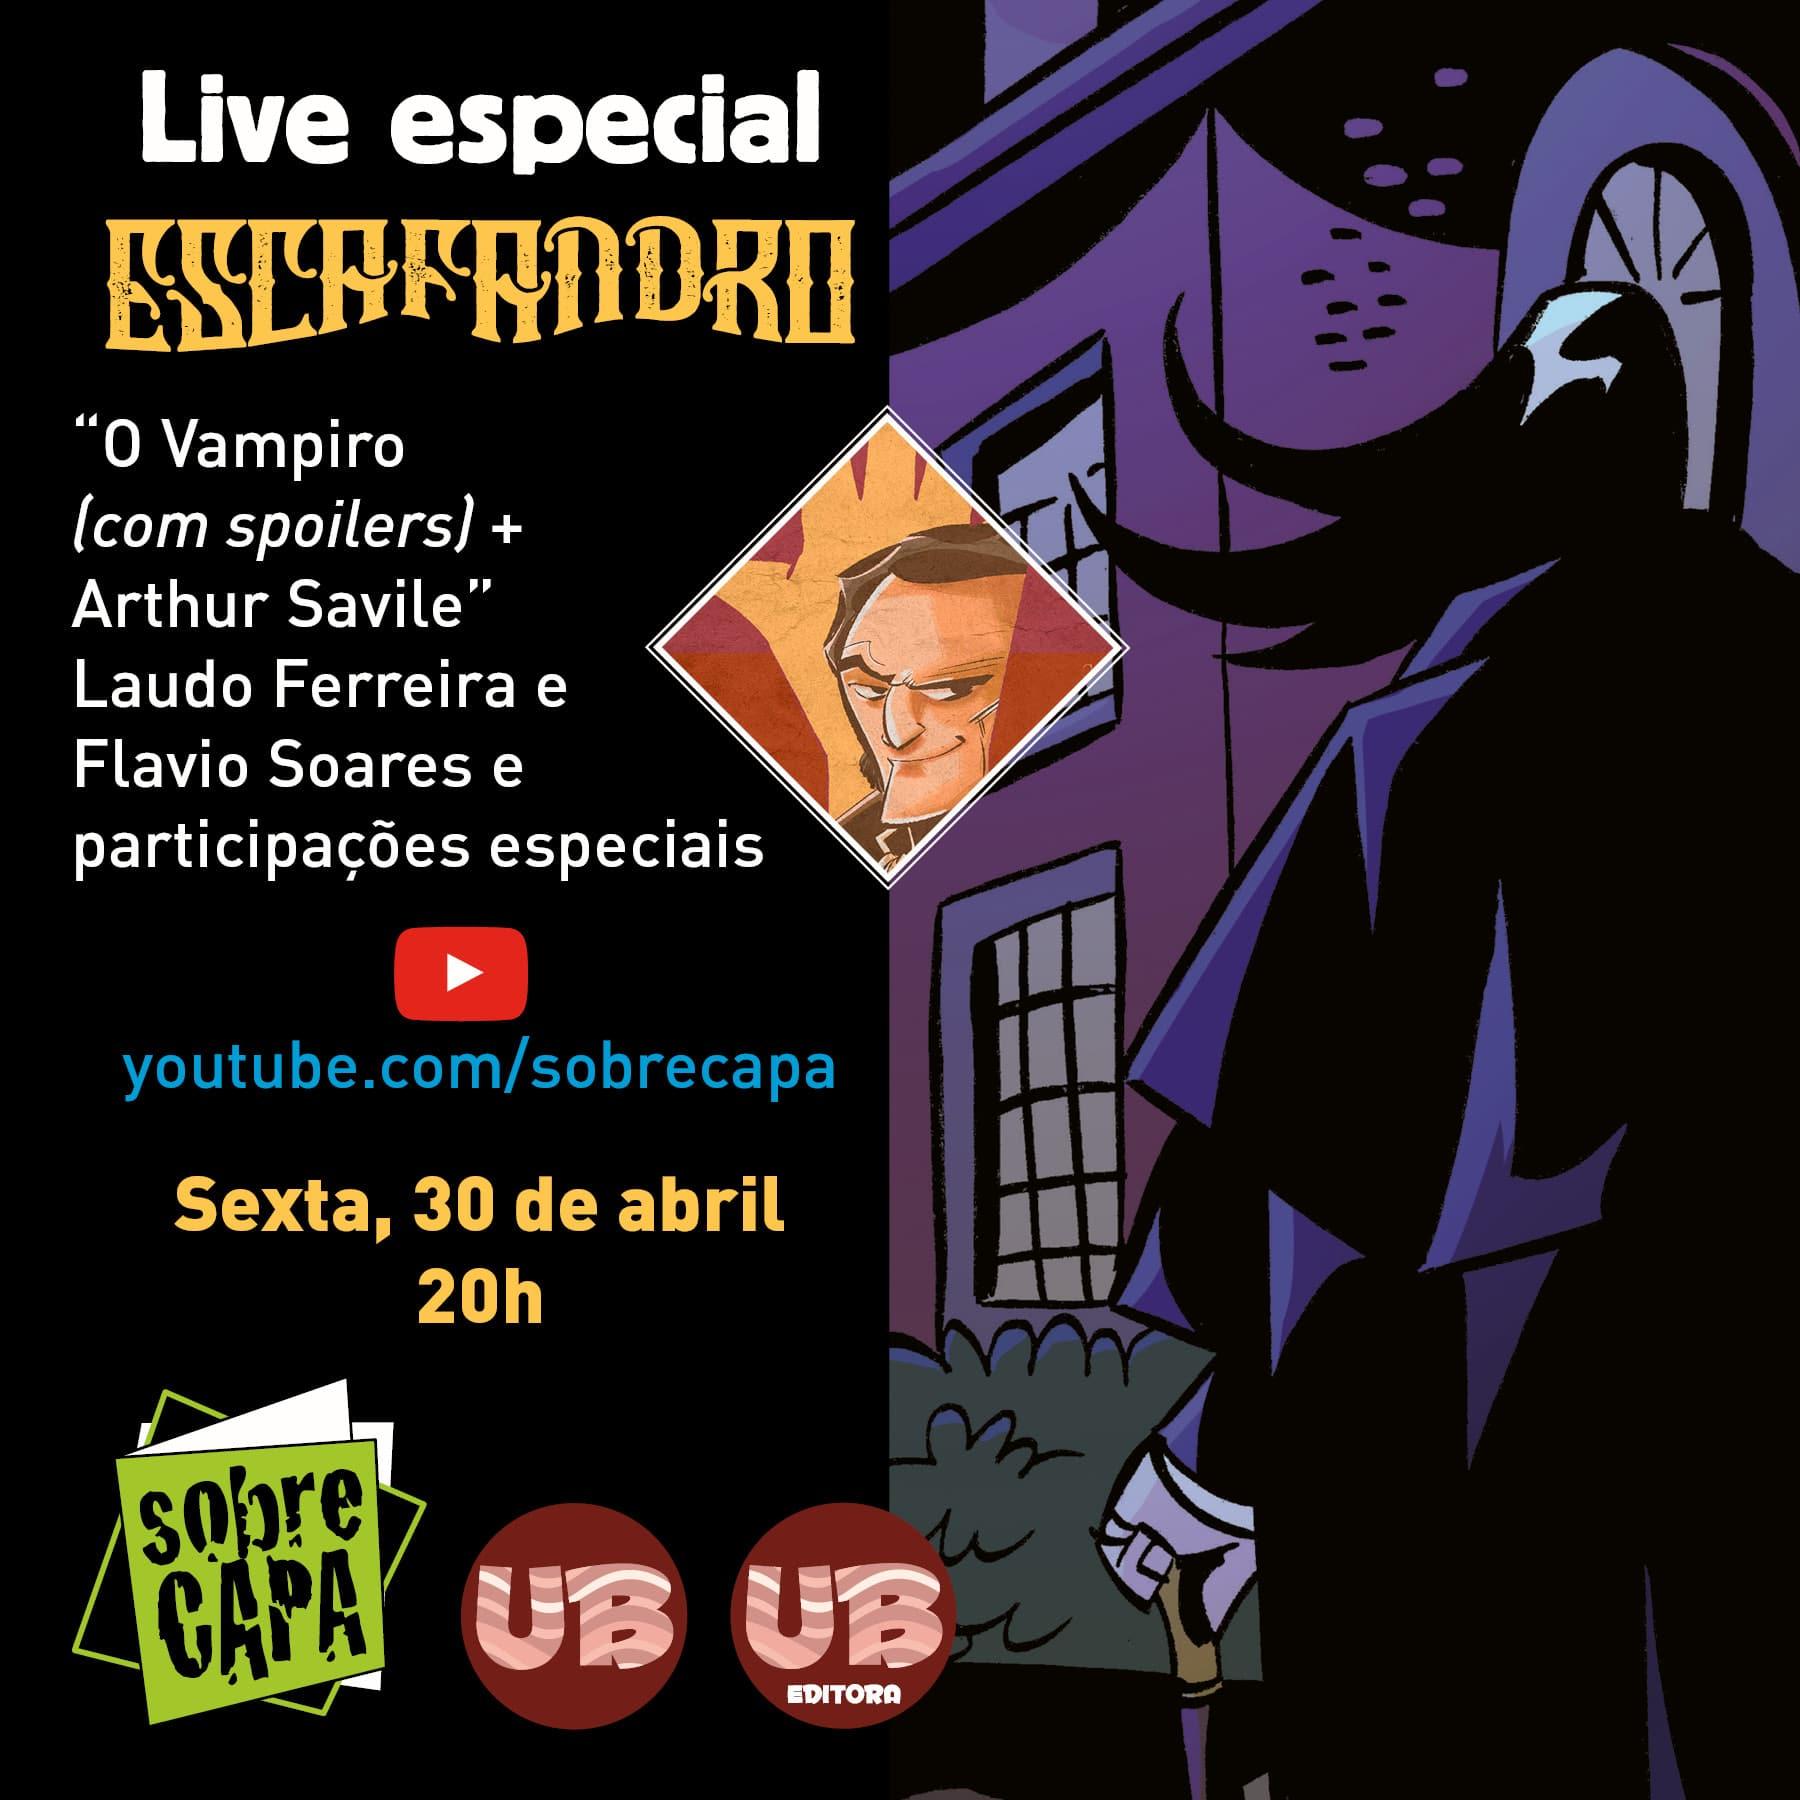 Live Especial Escafandro